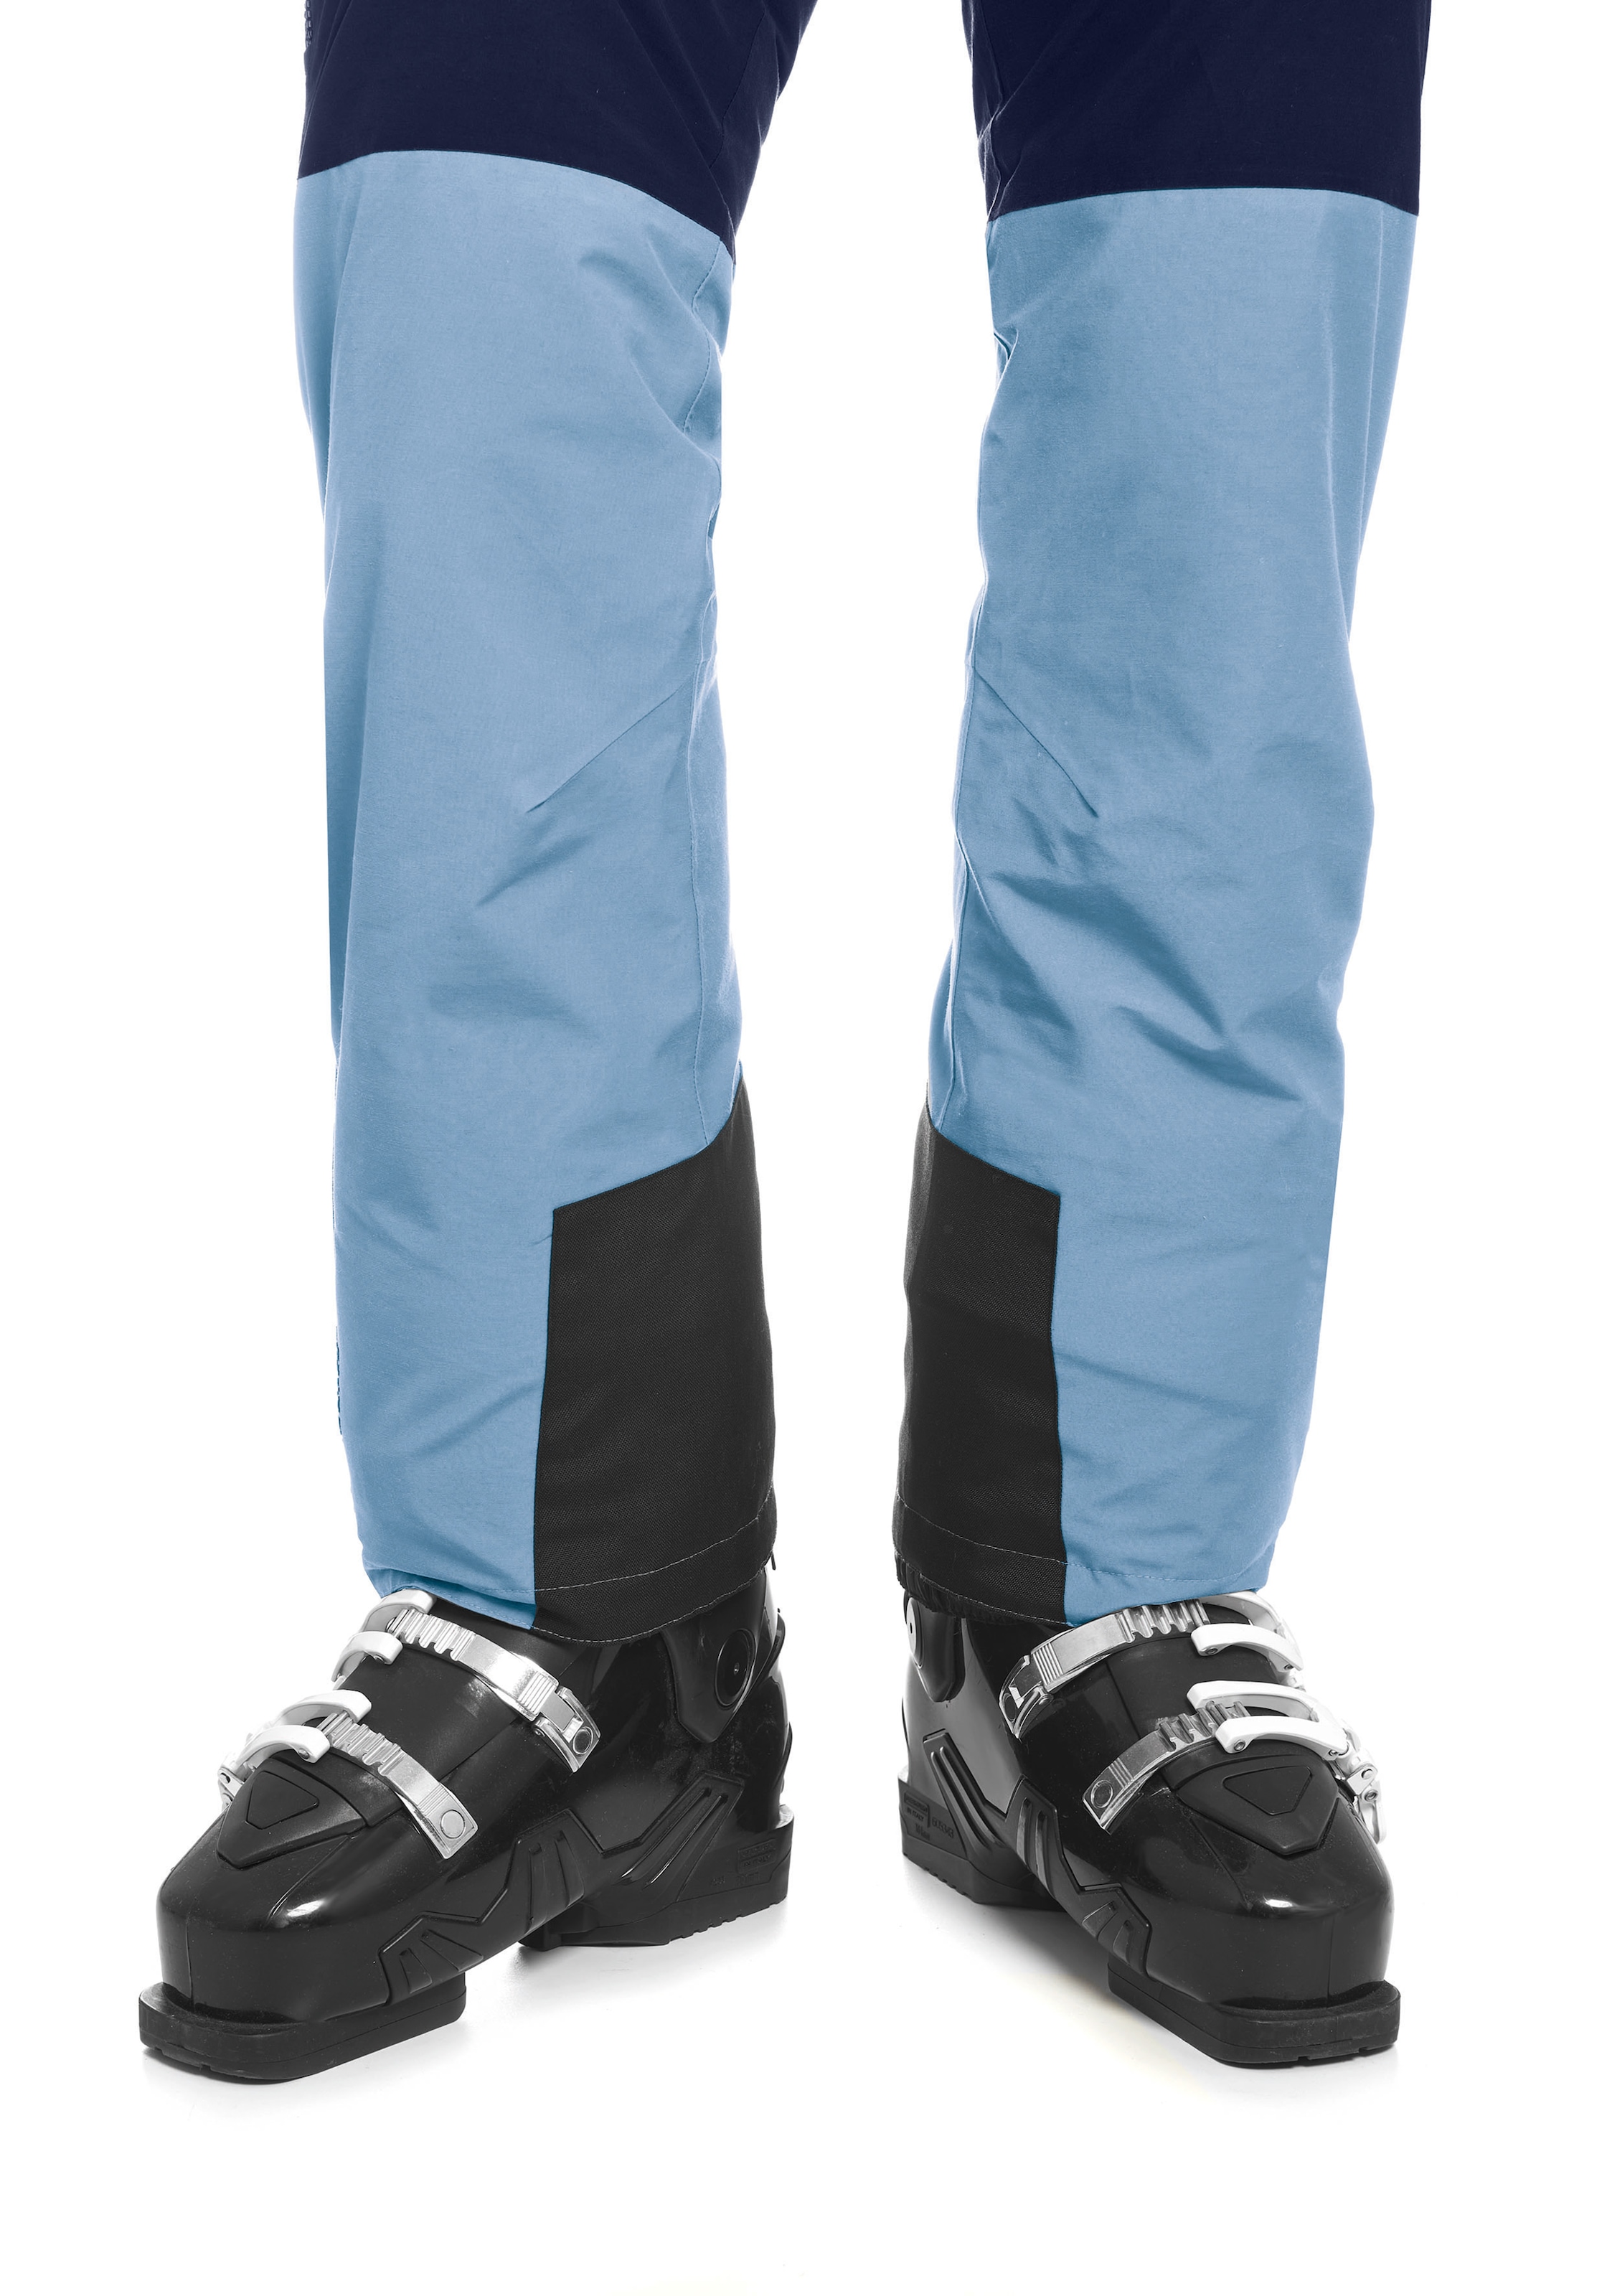 Maier Sports Skihose »Backline Pants W«, Lässig geschnittene Skihose für  Piste und Gelände im Online-Shop kaufen